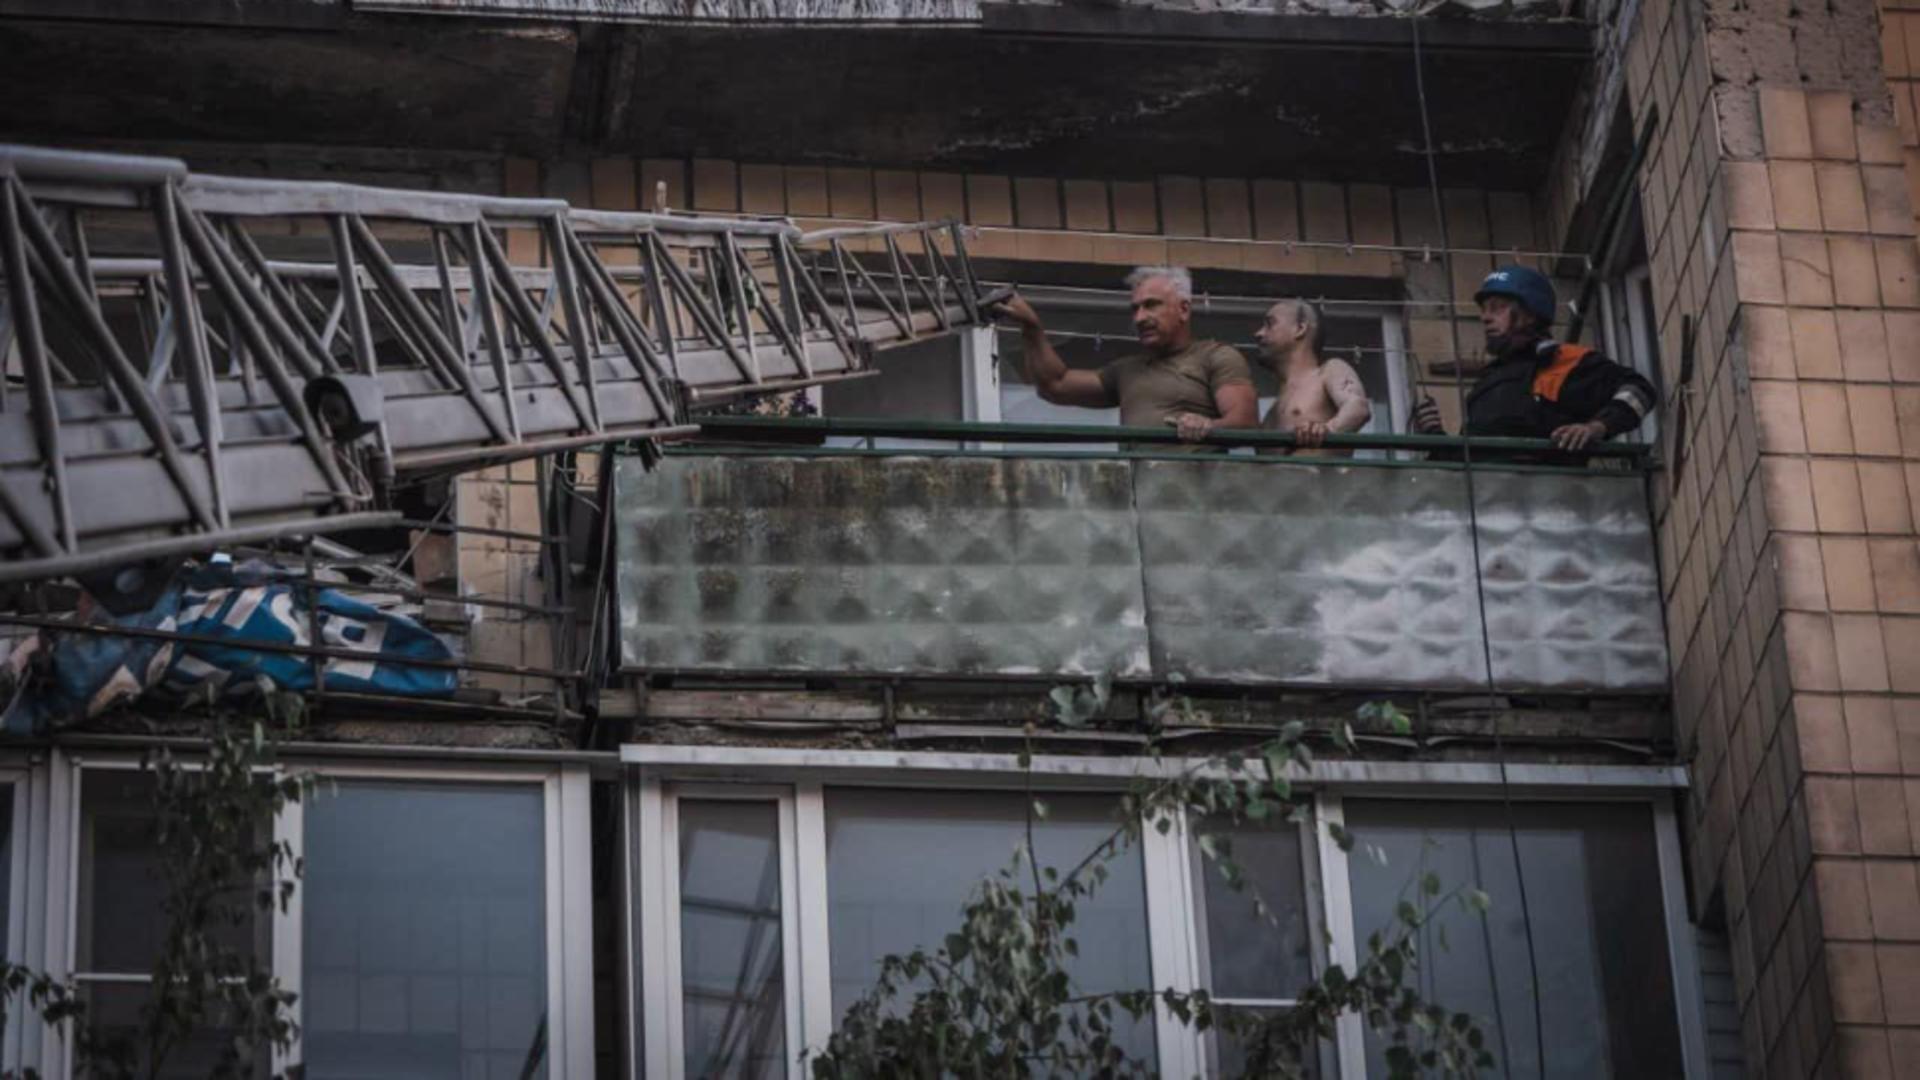 Război în Ucraina, ziua 531: Blocuri de locuințe din orașul ucrainean Pokrovsk, lovite de rachete rusești. Cel puțin 8 morți și 31 de răniți – LIVE TEXT